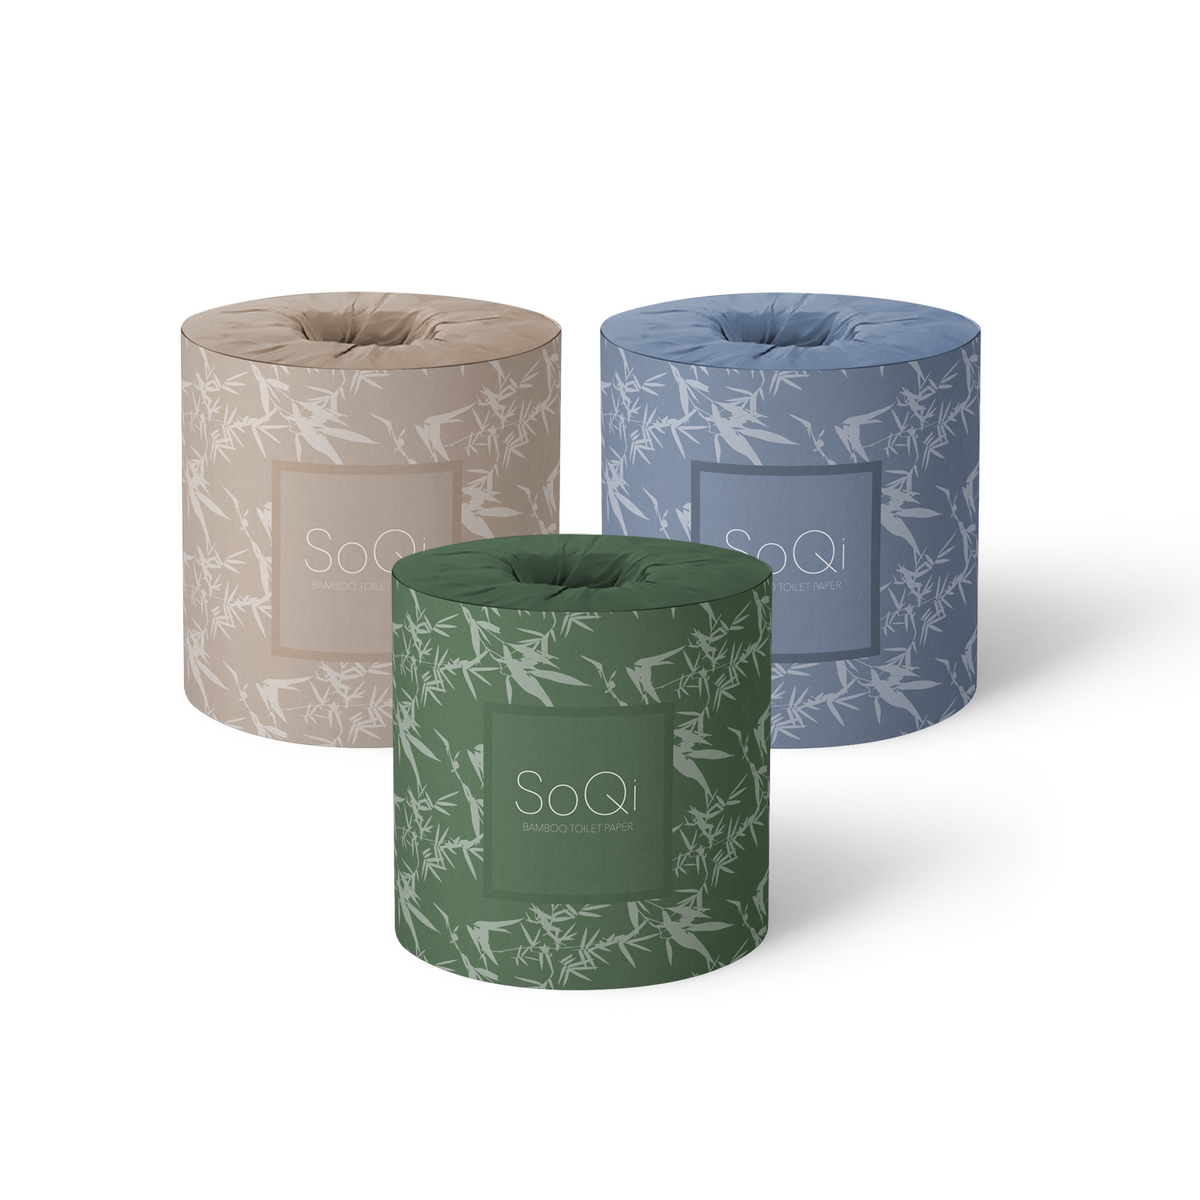 Premium Bamboo Toilet Paper